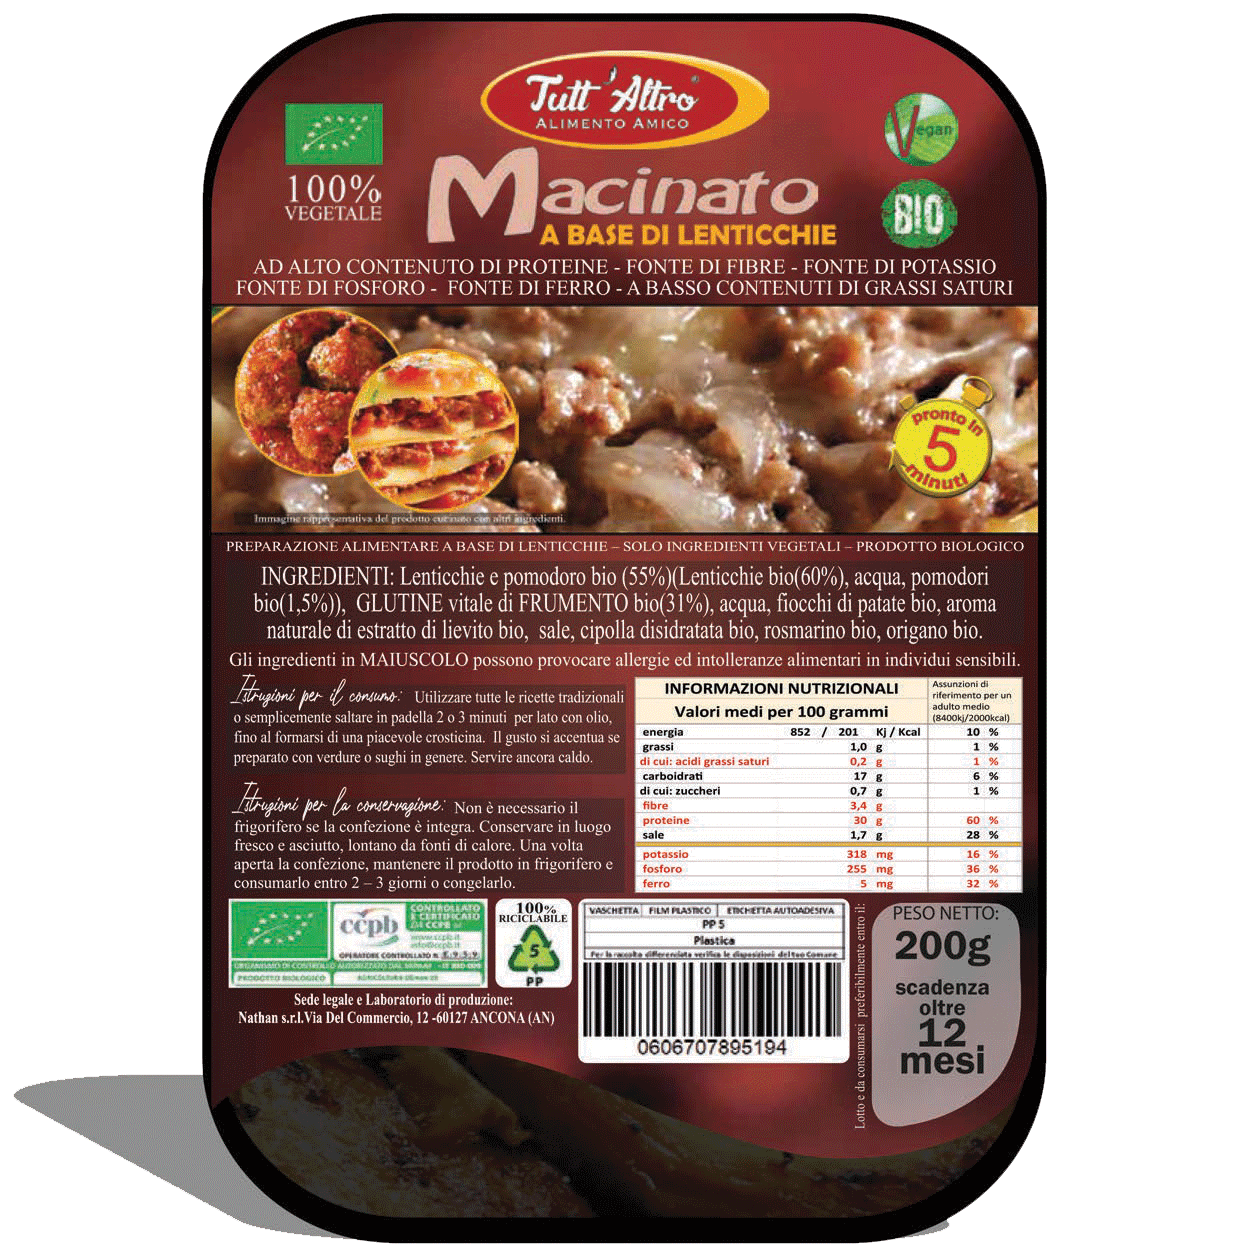 Macinato - Tutt'Altro - Alimenti 100% Veg&Bio